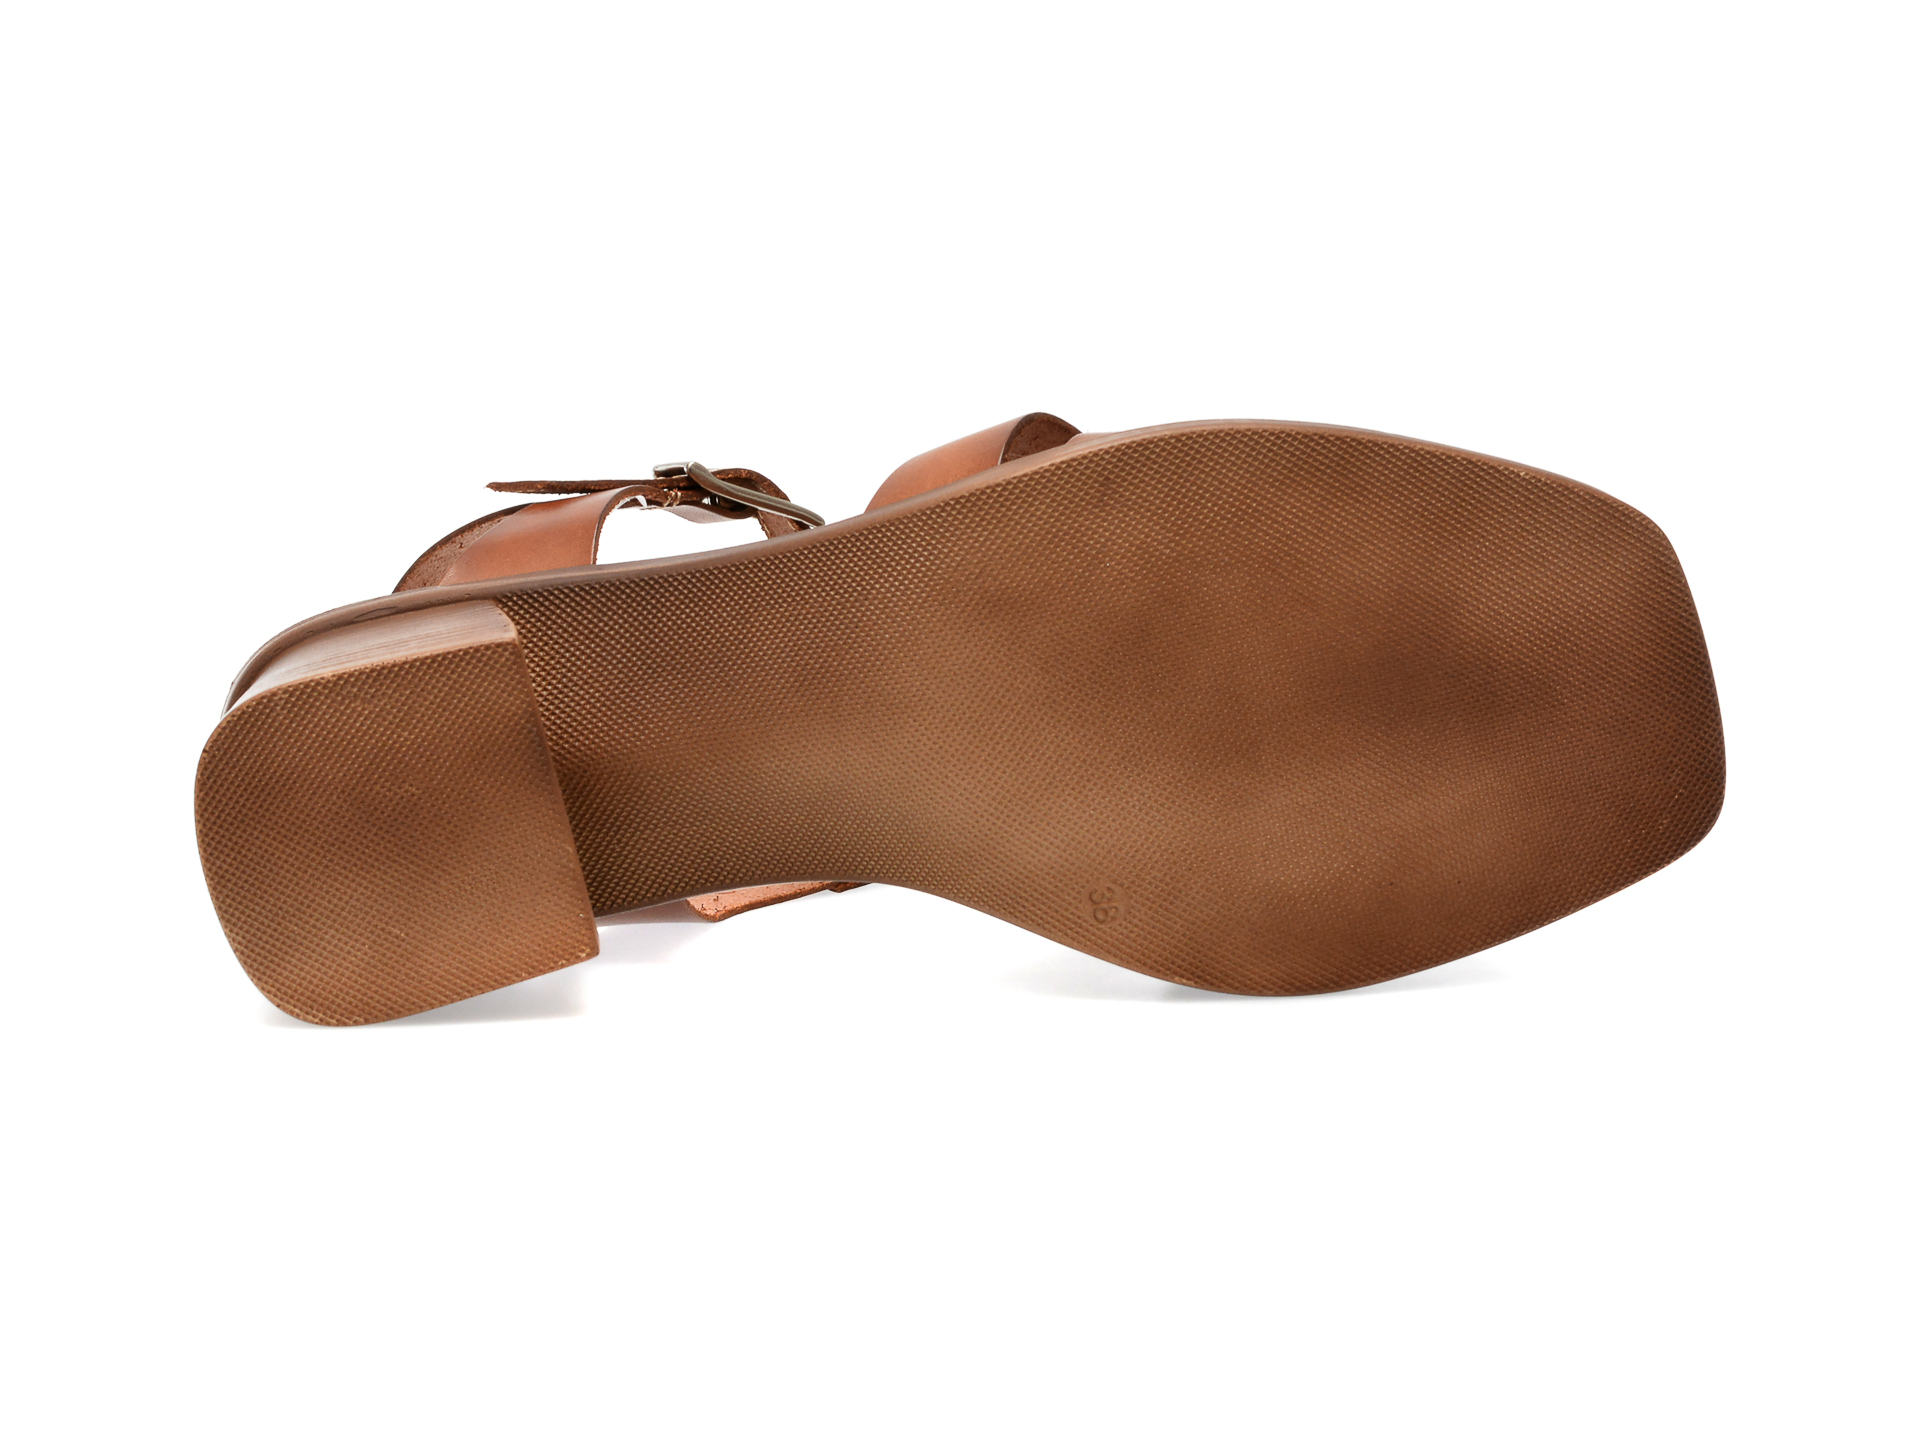 Sandale IMAGE maro, ENRIQUE, din piele naturala